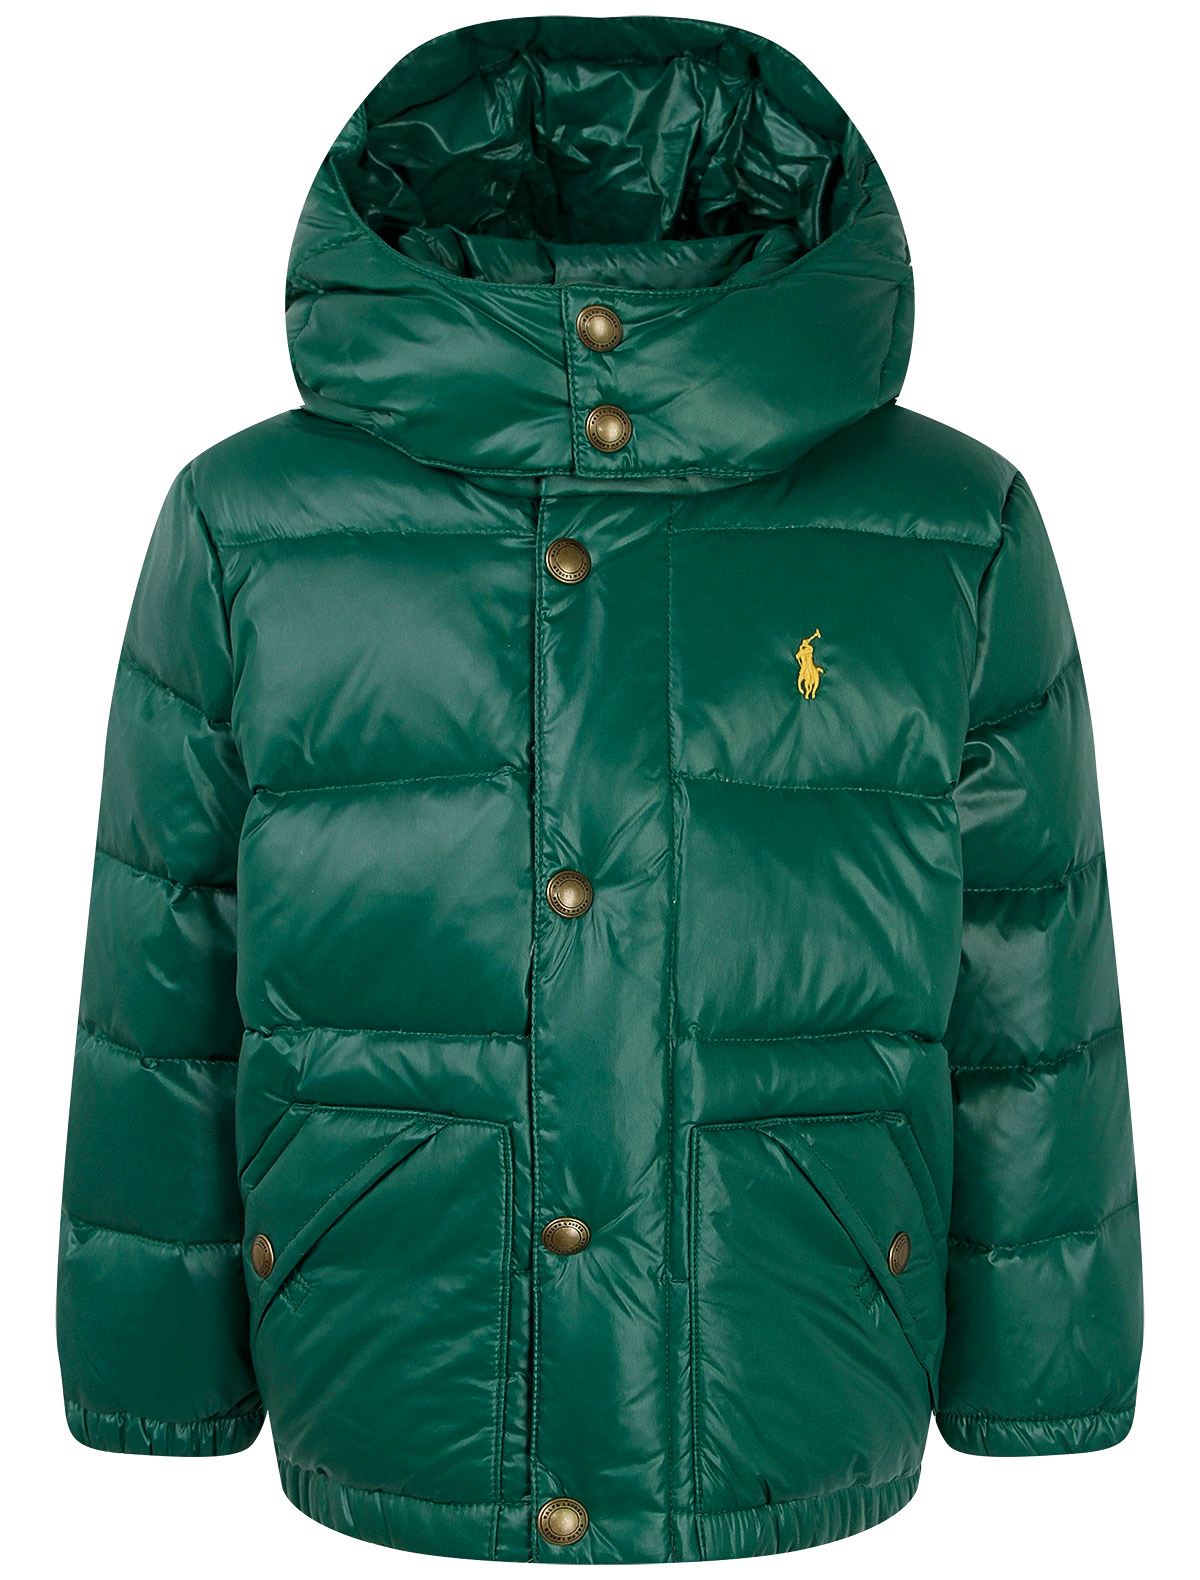 Куртка Ralph Lauren 2263595, цвет зеленый, размер 5 1074519083709 - фото 1